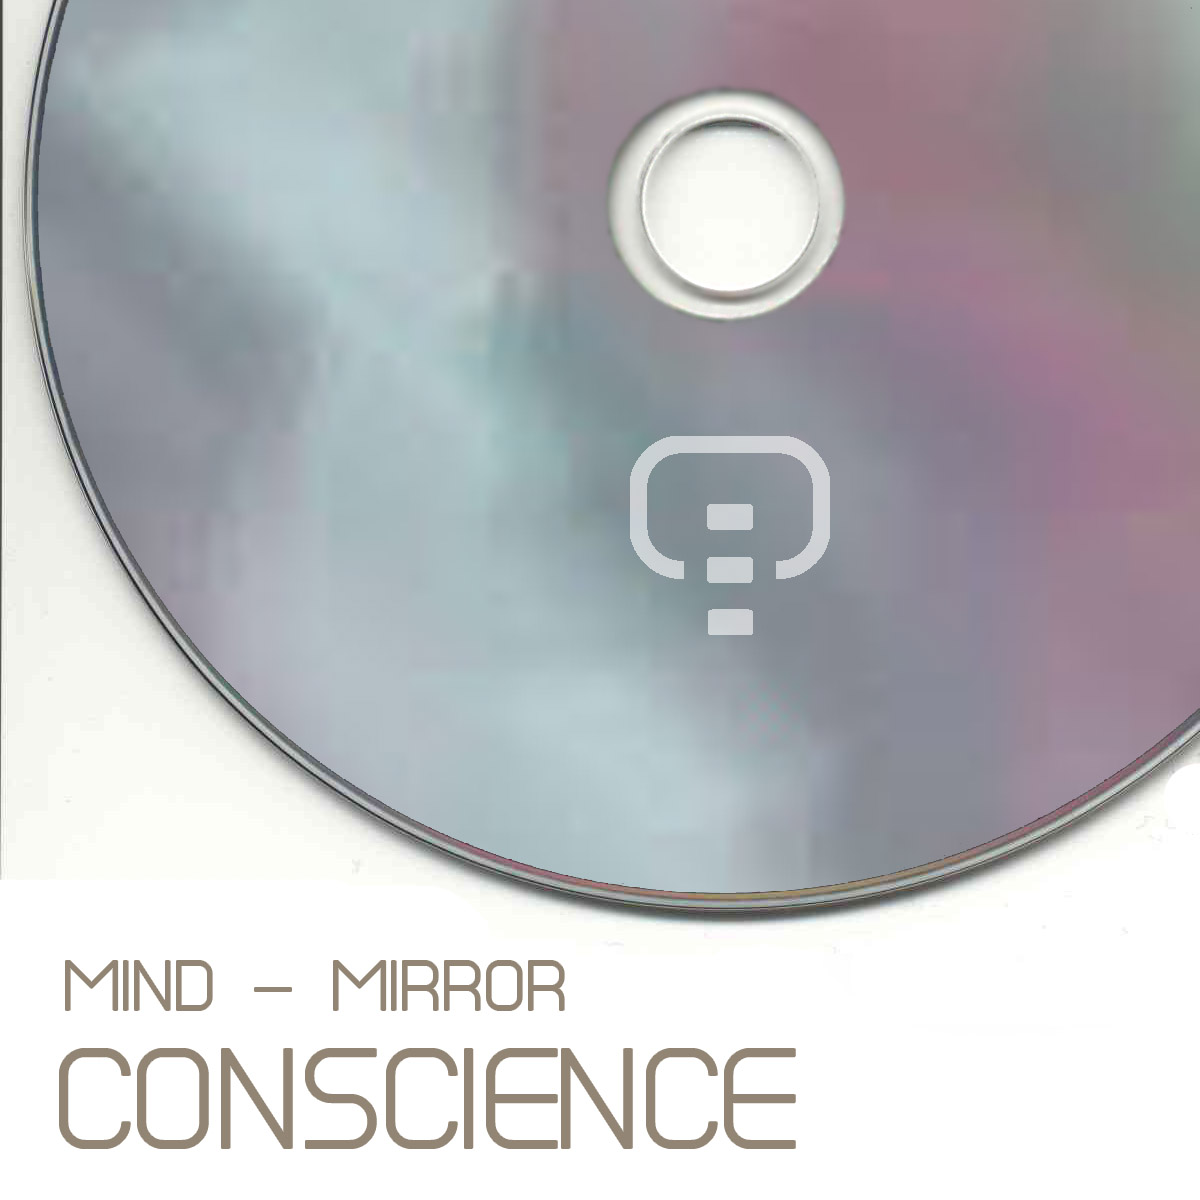 Mind-mirror